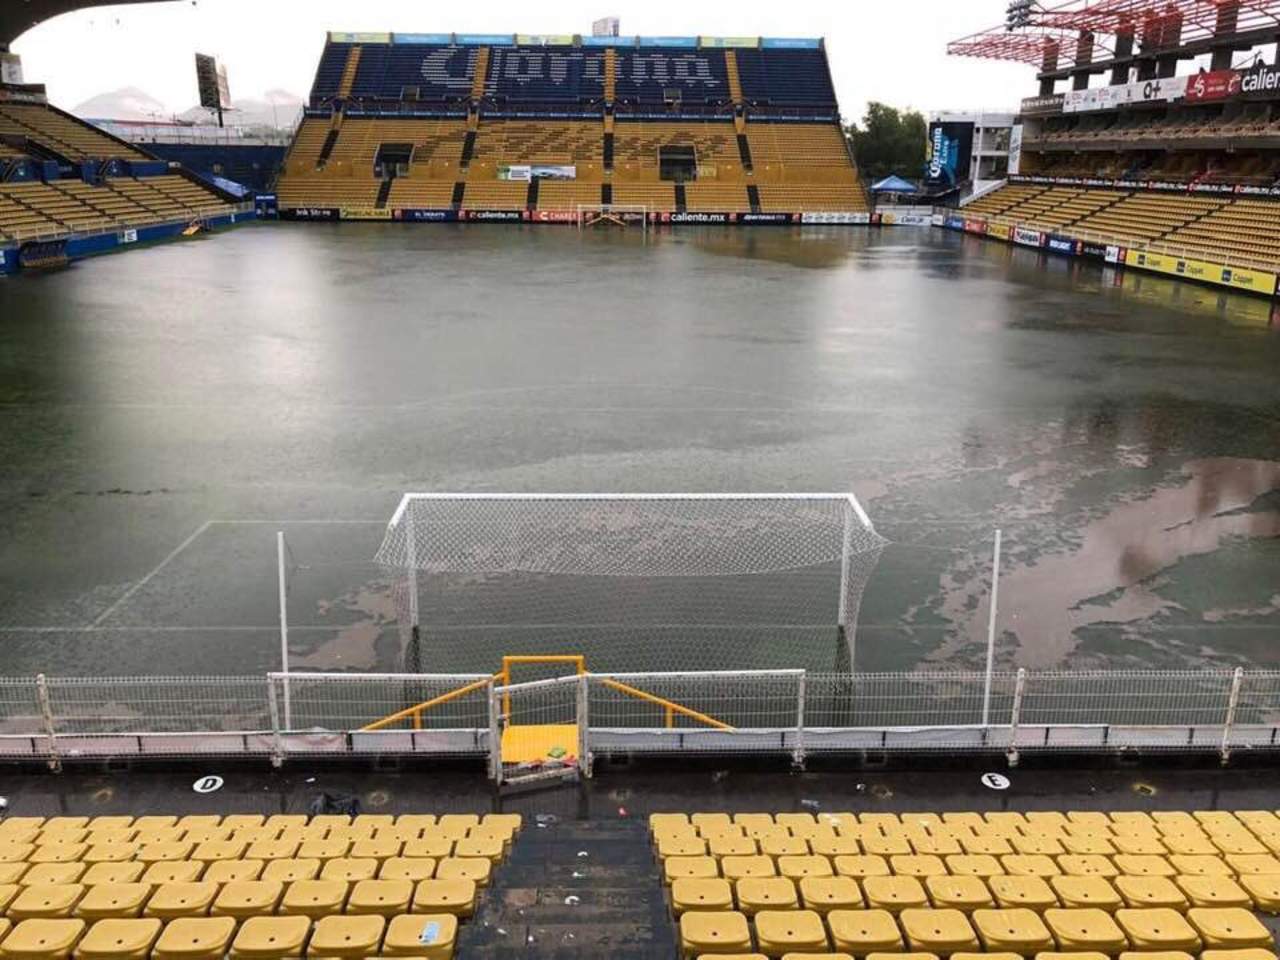 En una imagen que compartió 'El Gran Pez' en sus redes sociales, se puede observar el Estadio Banorte completamente inundado. (Especial)